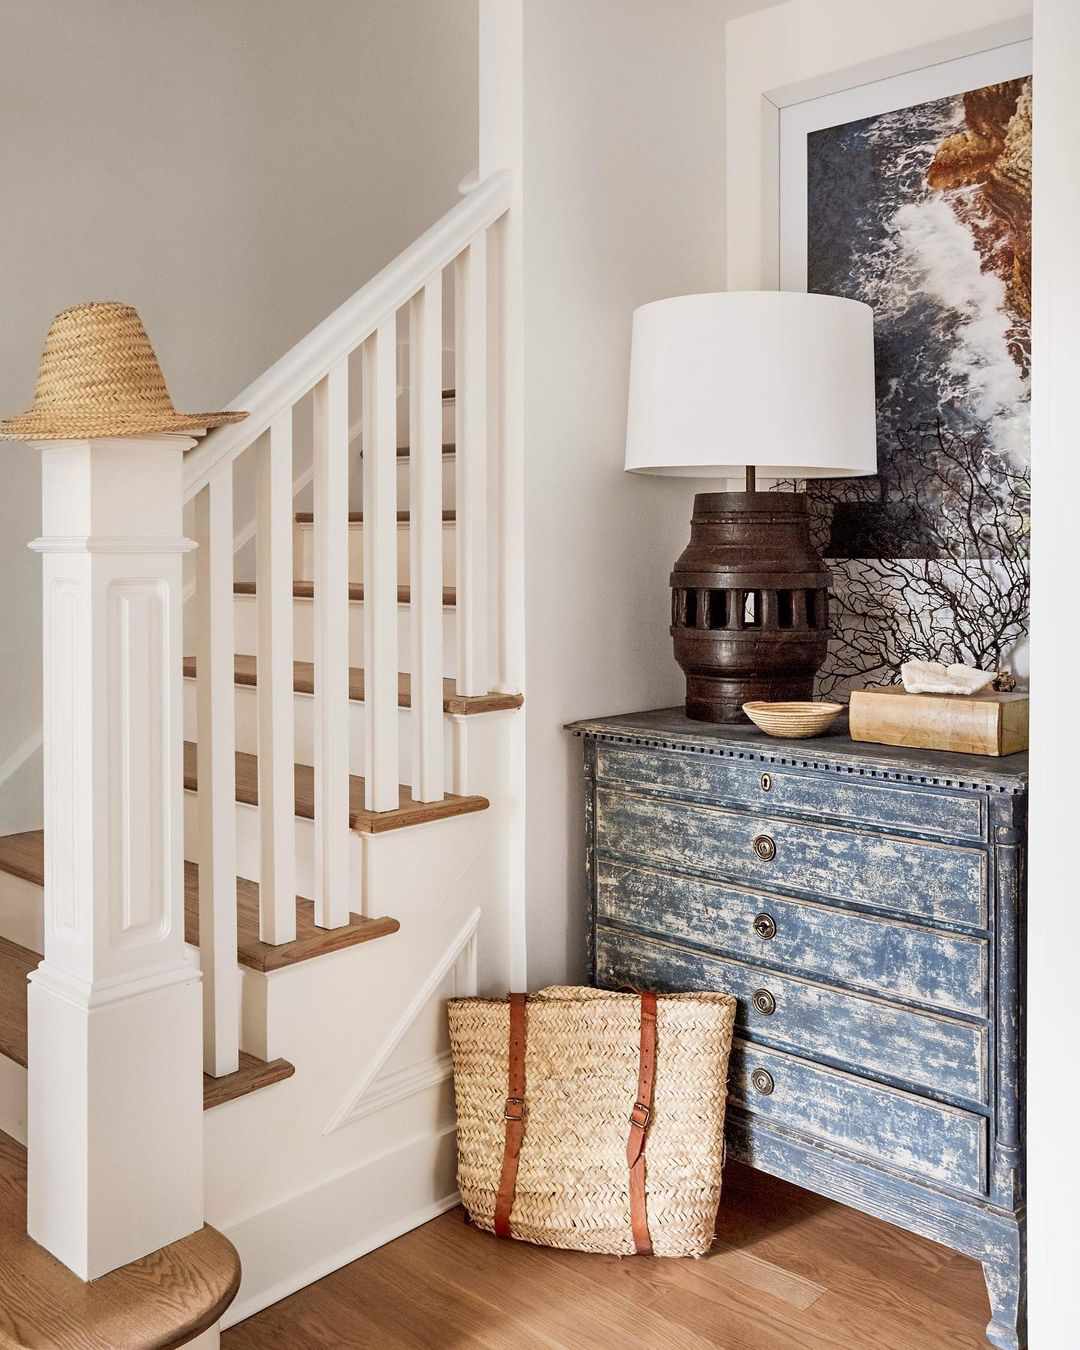 Cầu thang sơn trắng, các bậc tam cấp gỗ là sự kết hợp tuyệt vời để tạo nên cái nhìn vừa thanh lịch vừa mộc mạc.